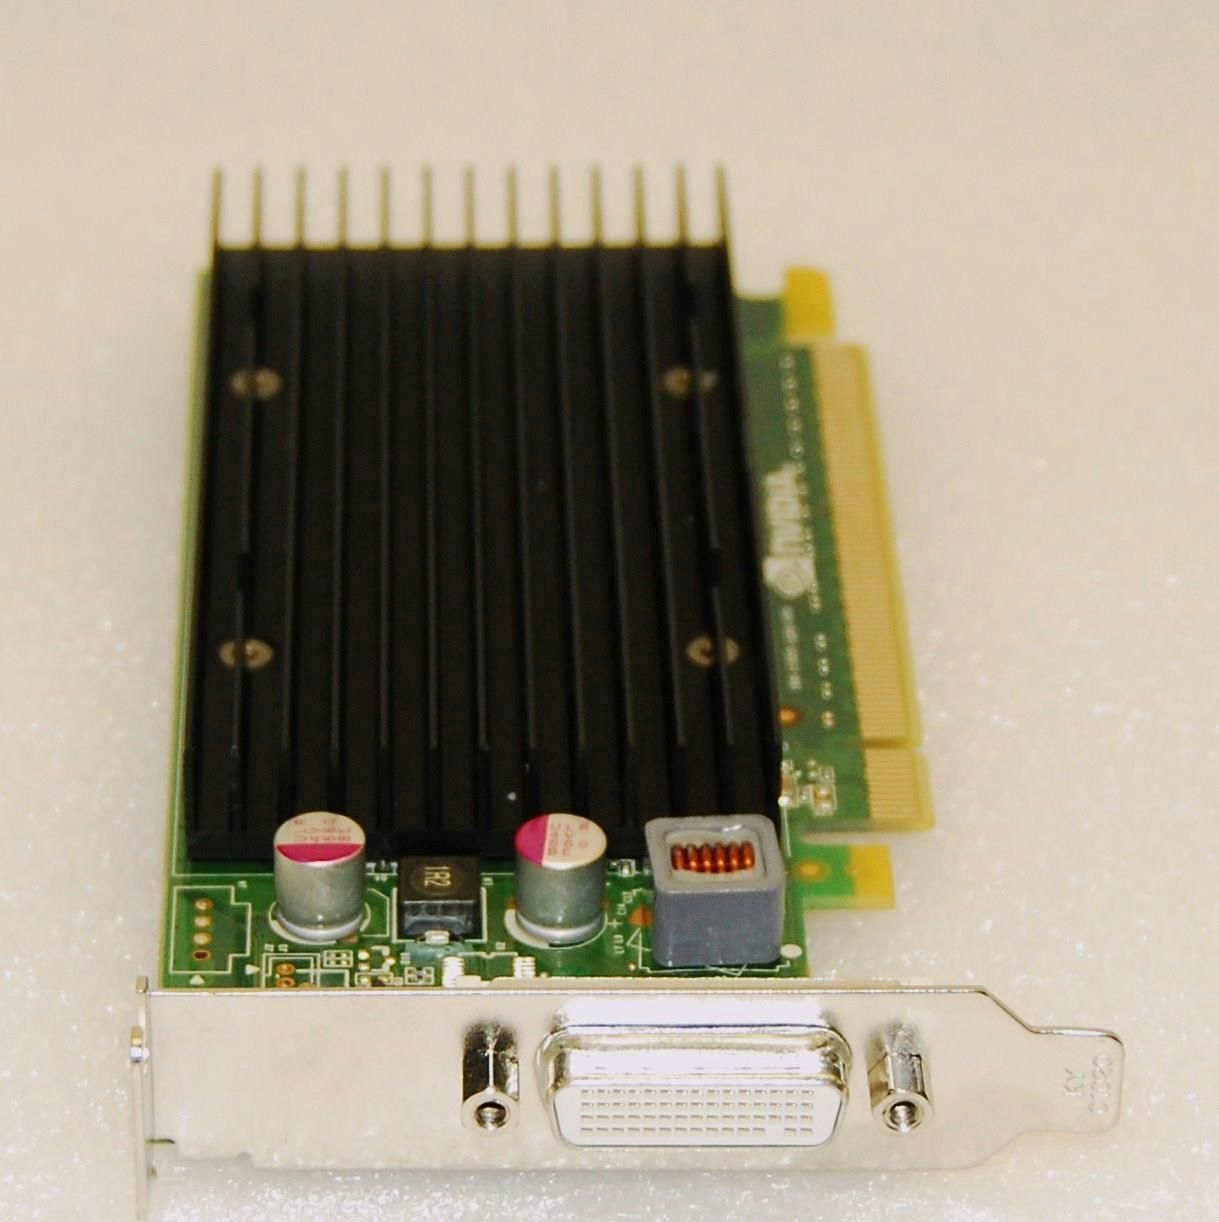 PNY VCQ420NVS-X16-DVI-PB Quadro NVS 420 512MB (256MB per GPU) 128-bit (64-bit per GPU) GDDR3 PCI Express x16 Workstation Video Card